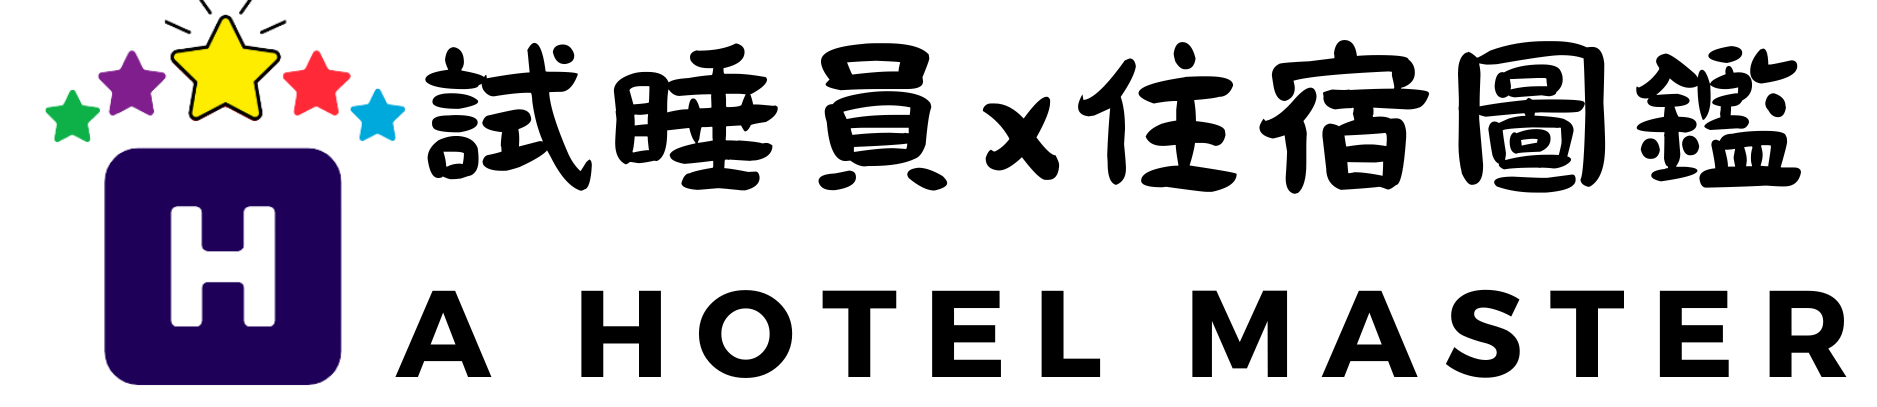 旅館試睡員logo